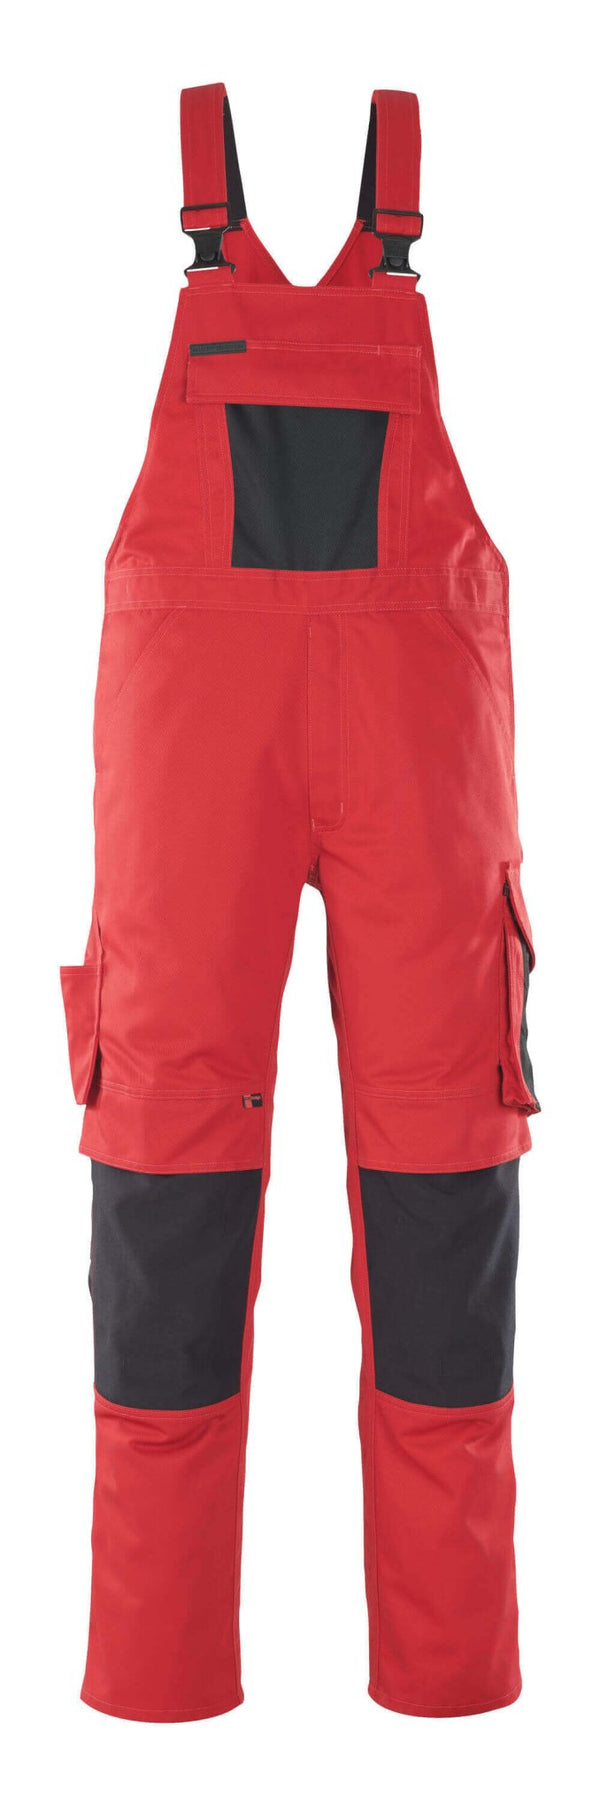 Avohaalari polvitaskuilla - 12069-203 - punainen/musta - Safewear